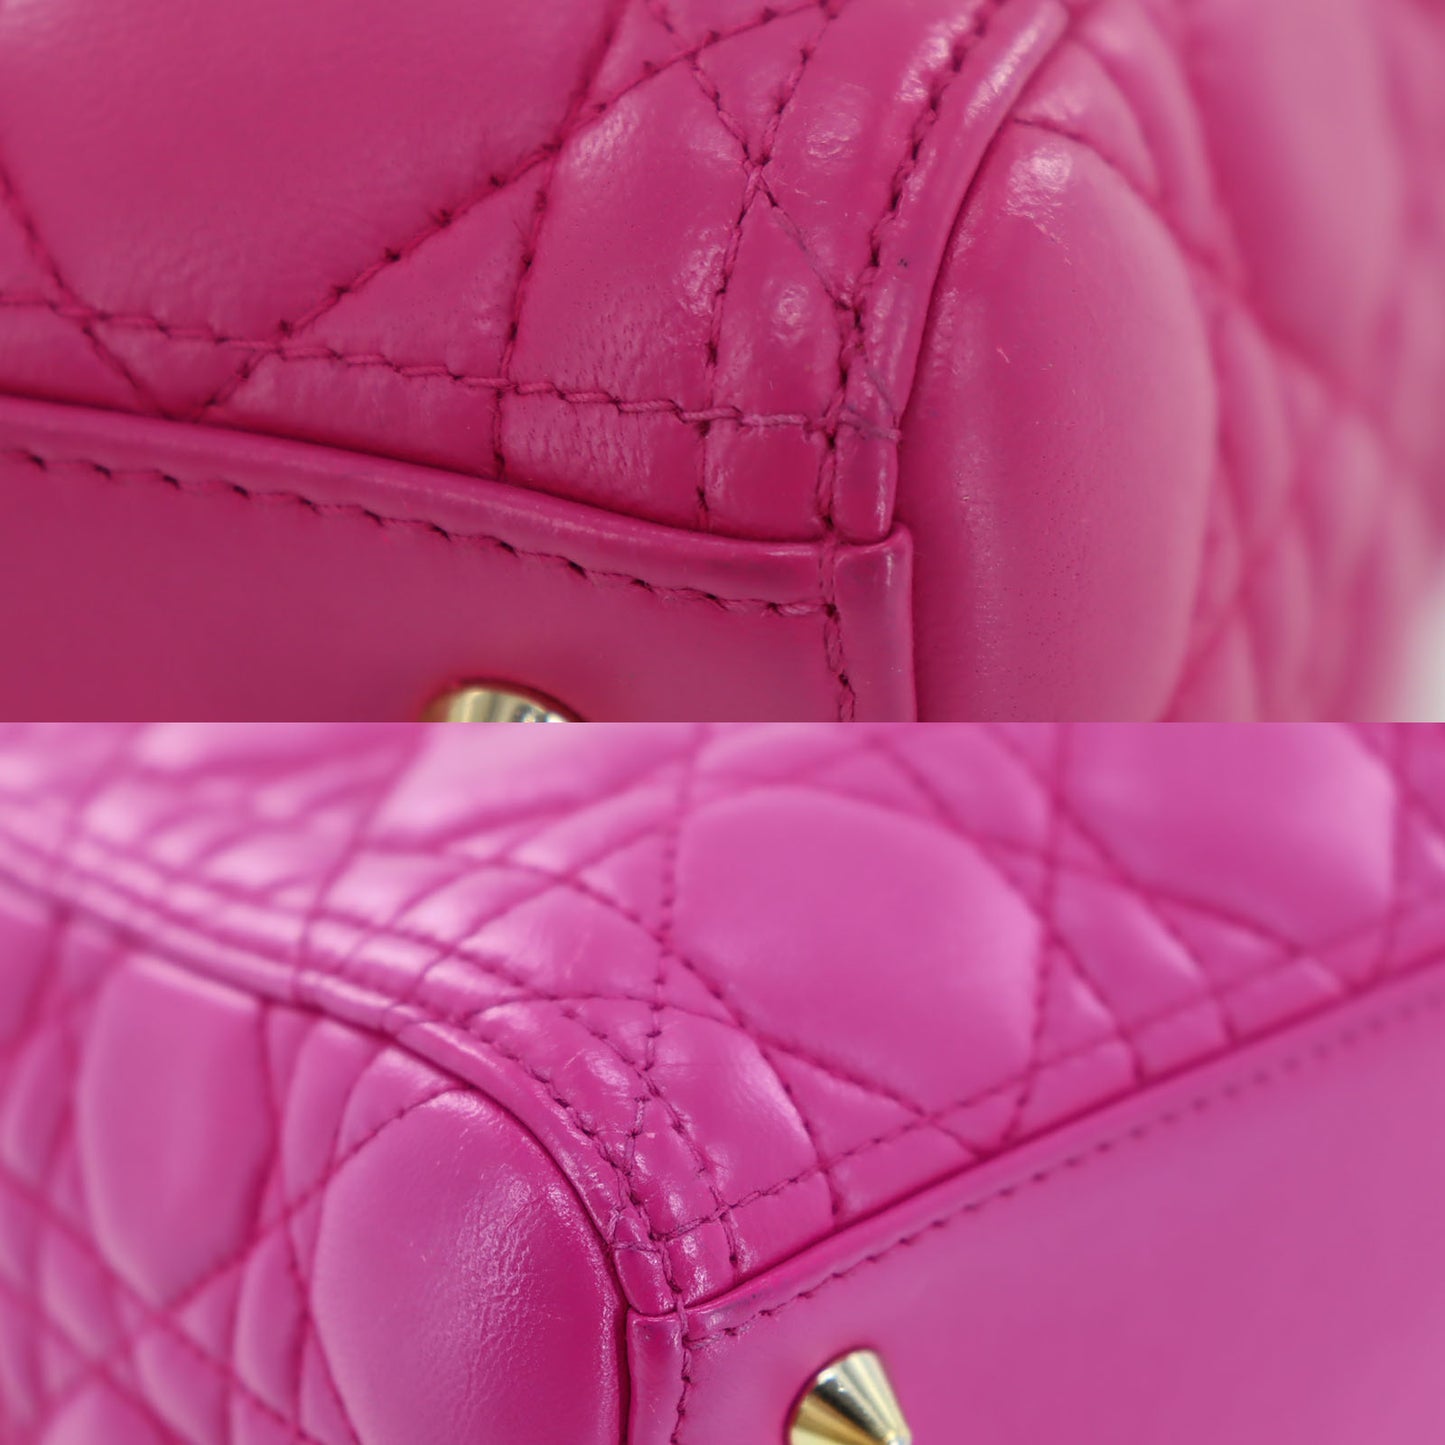 Christian Dior Lady Dior HandBag Shoulder Bag Pink #BM950